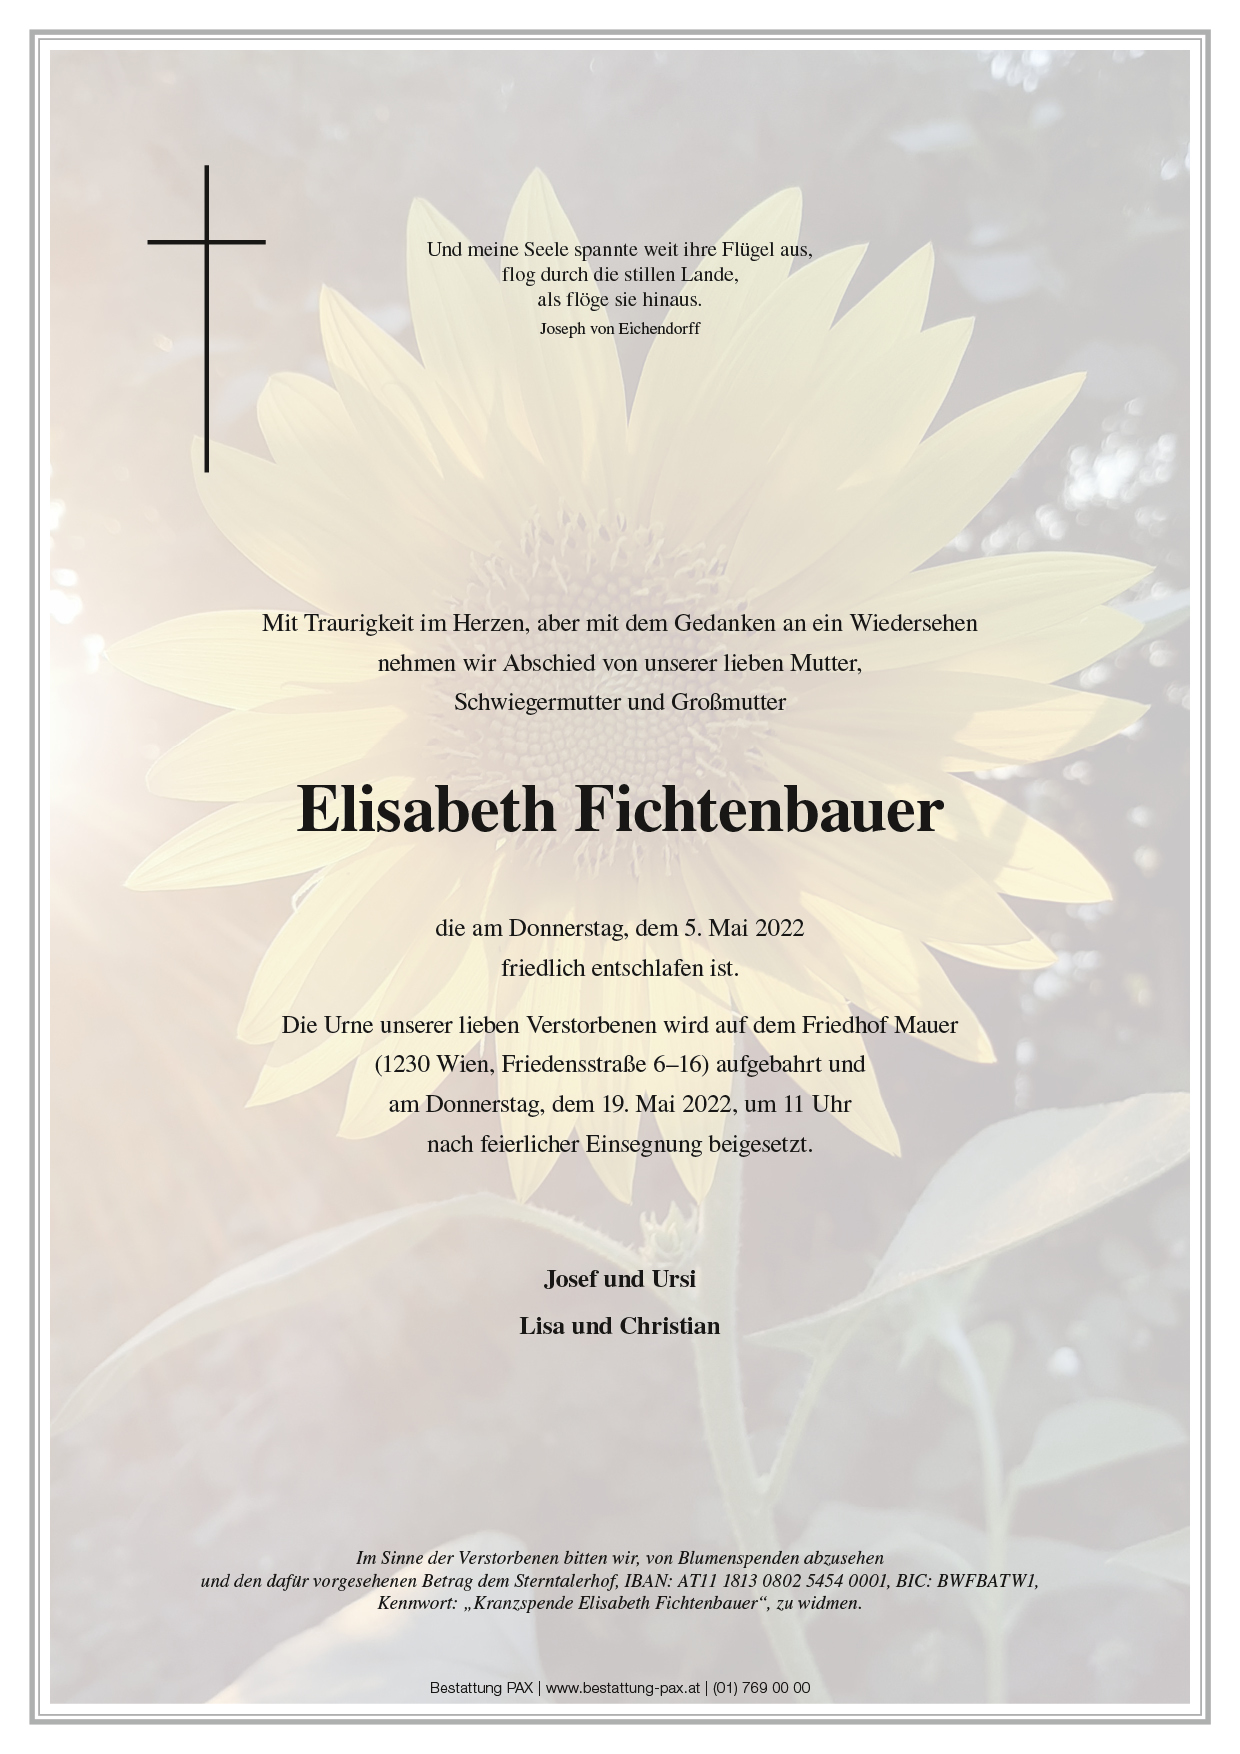 Elisabeth Fichtenbauer